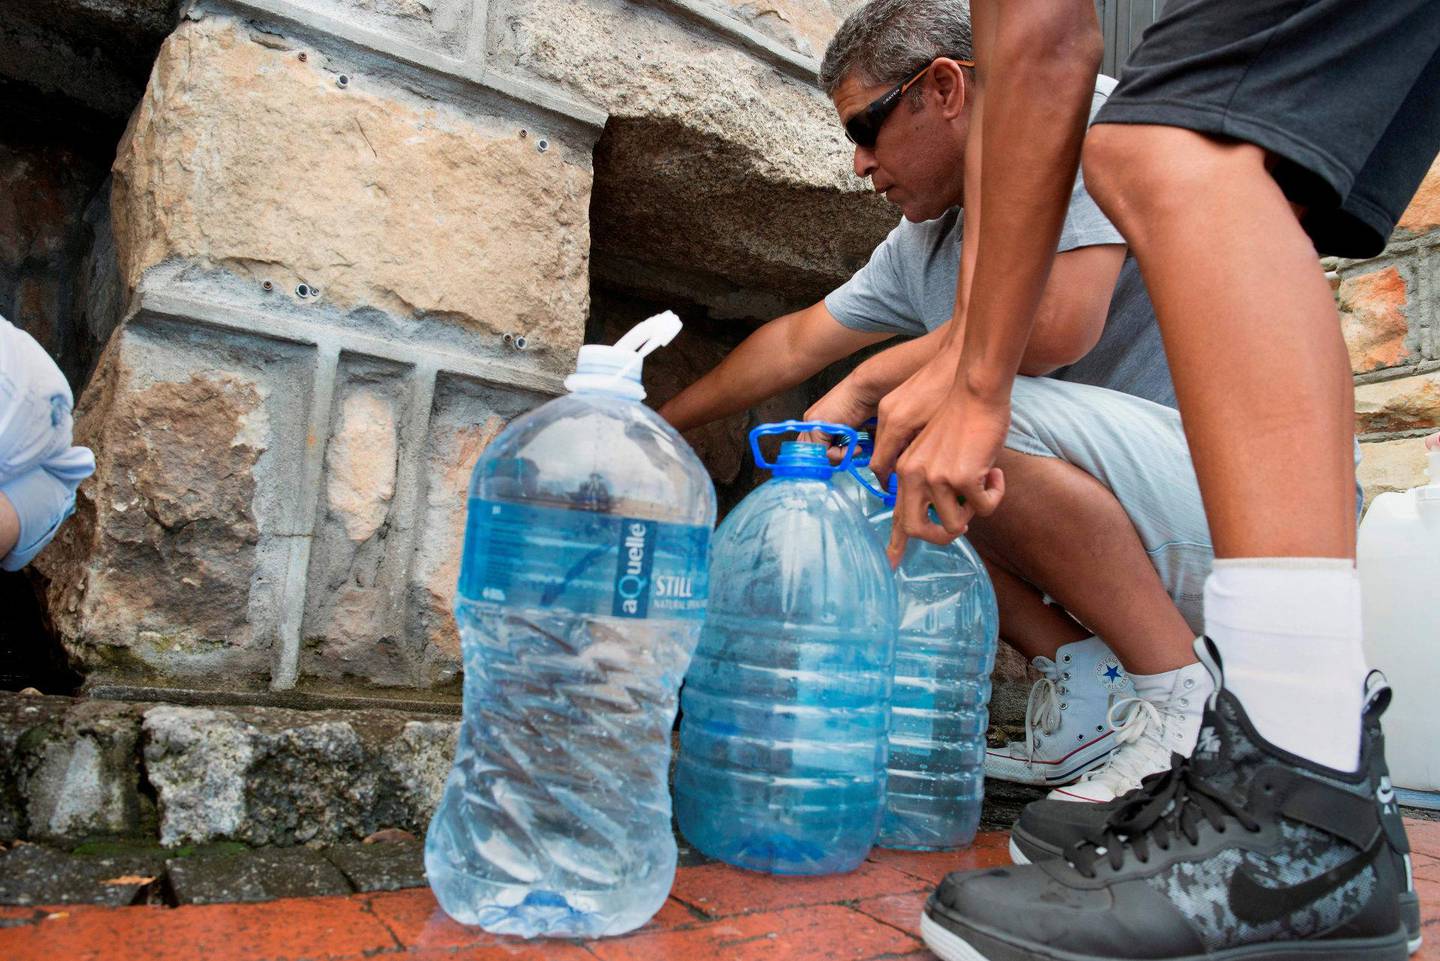 Cape Town gikk nesten tom for vann i 2018, men unngikk den store krisen fordi innbyggerne sparte på vannet. FOTO: NTB SCANPIX